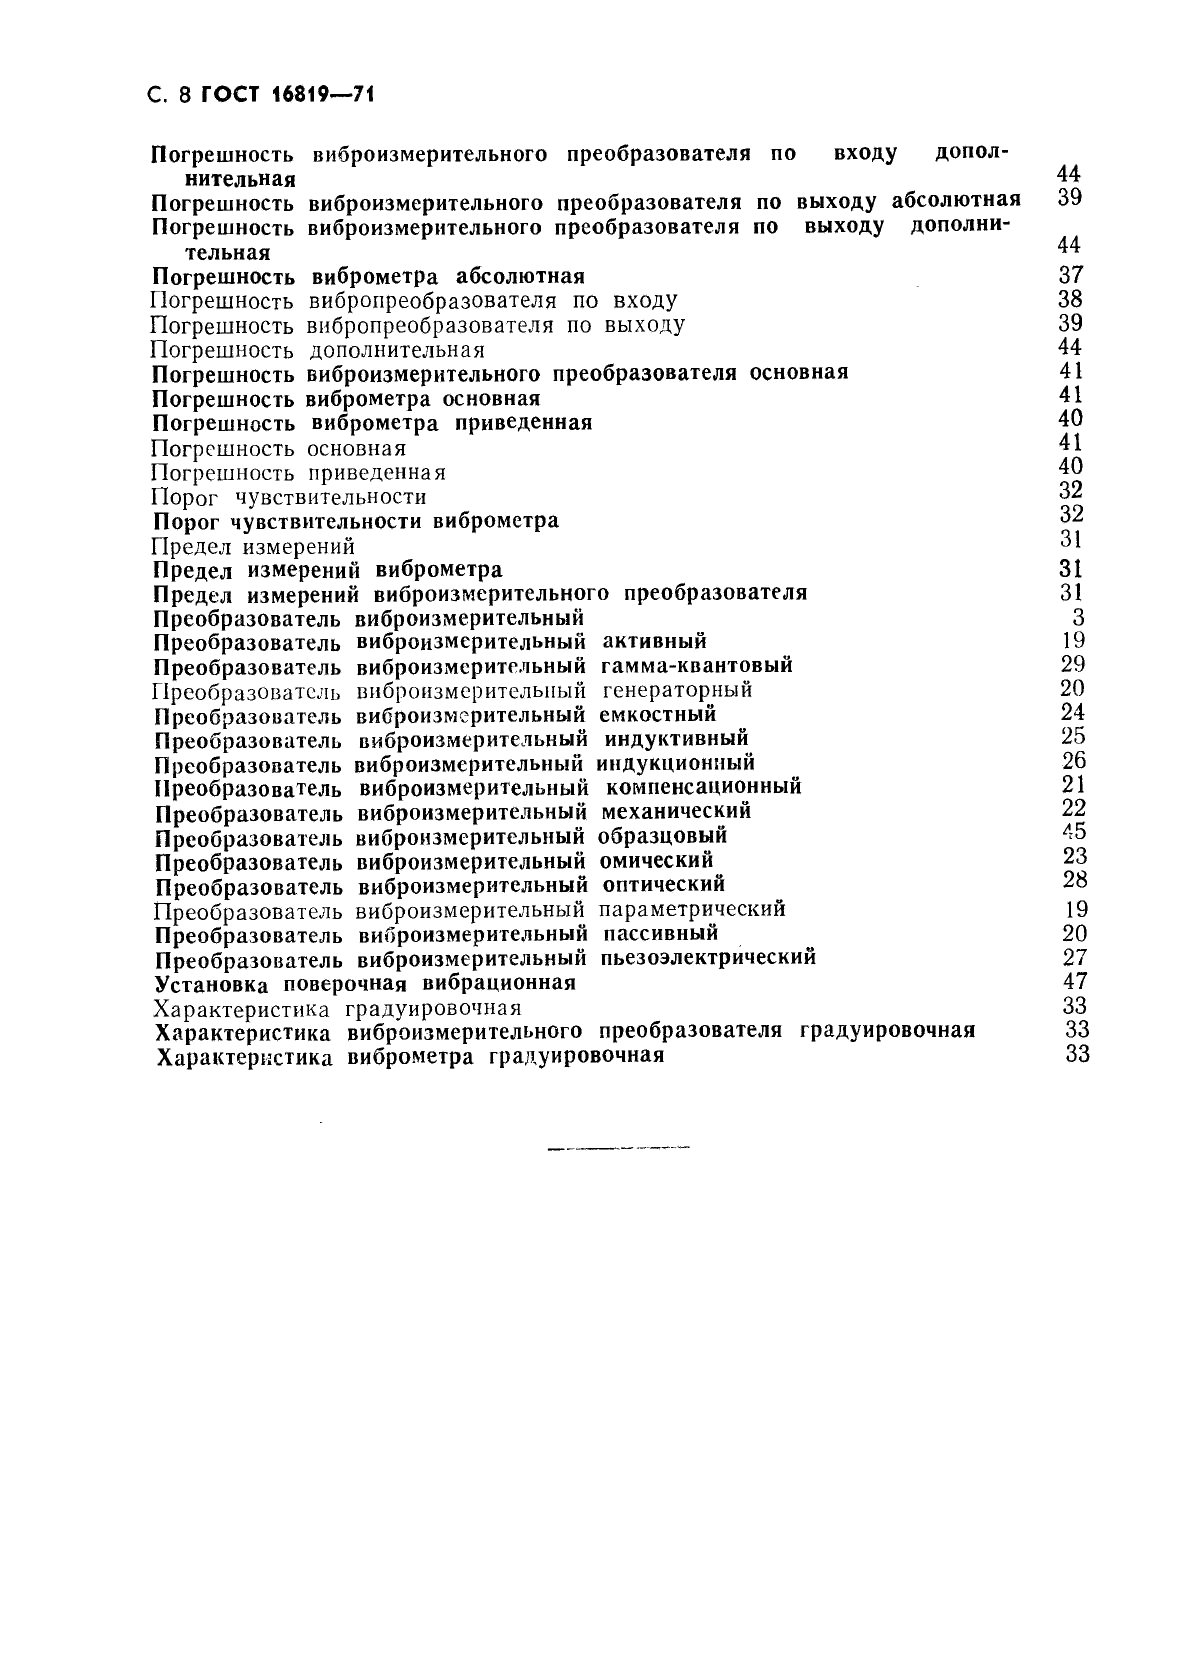 ГОСТ 16819-71 Приборы виброизмерительные. Термины и определения (фото 9 из 10)